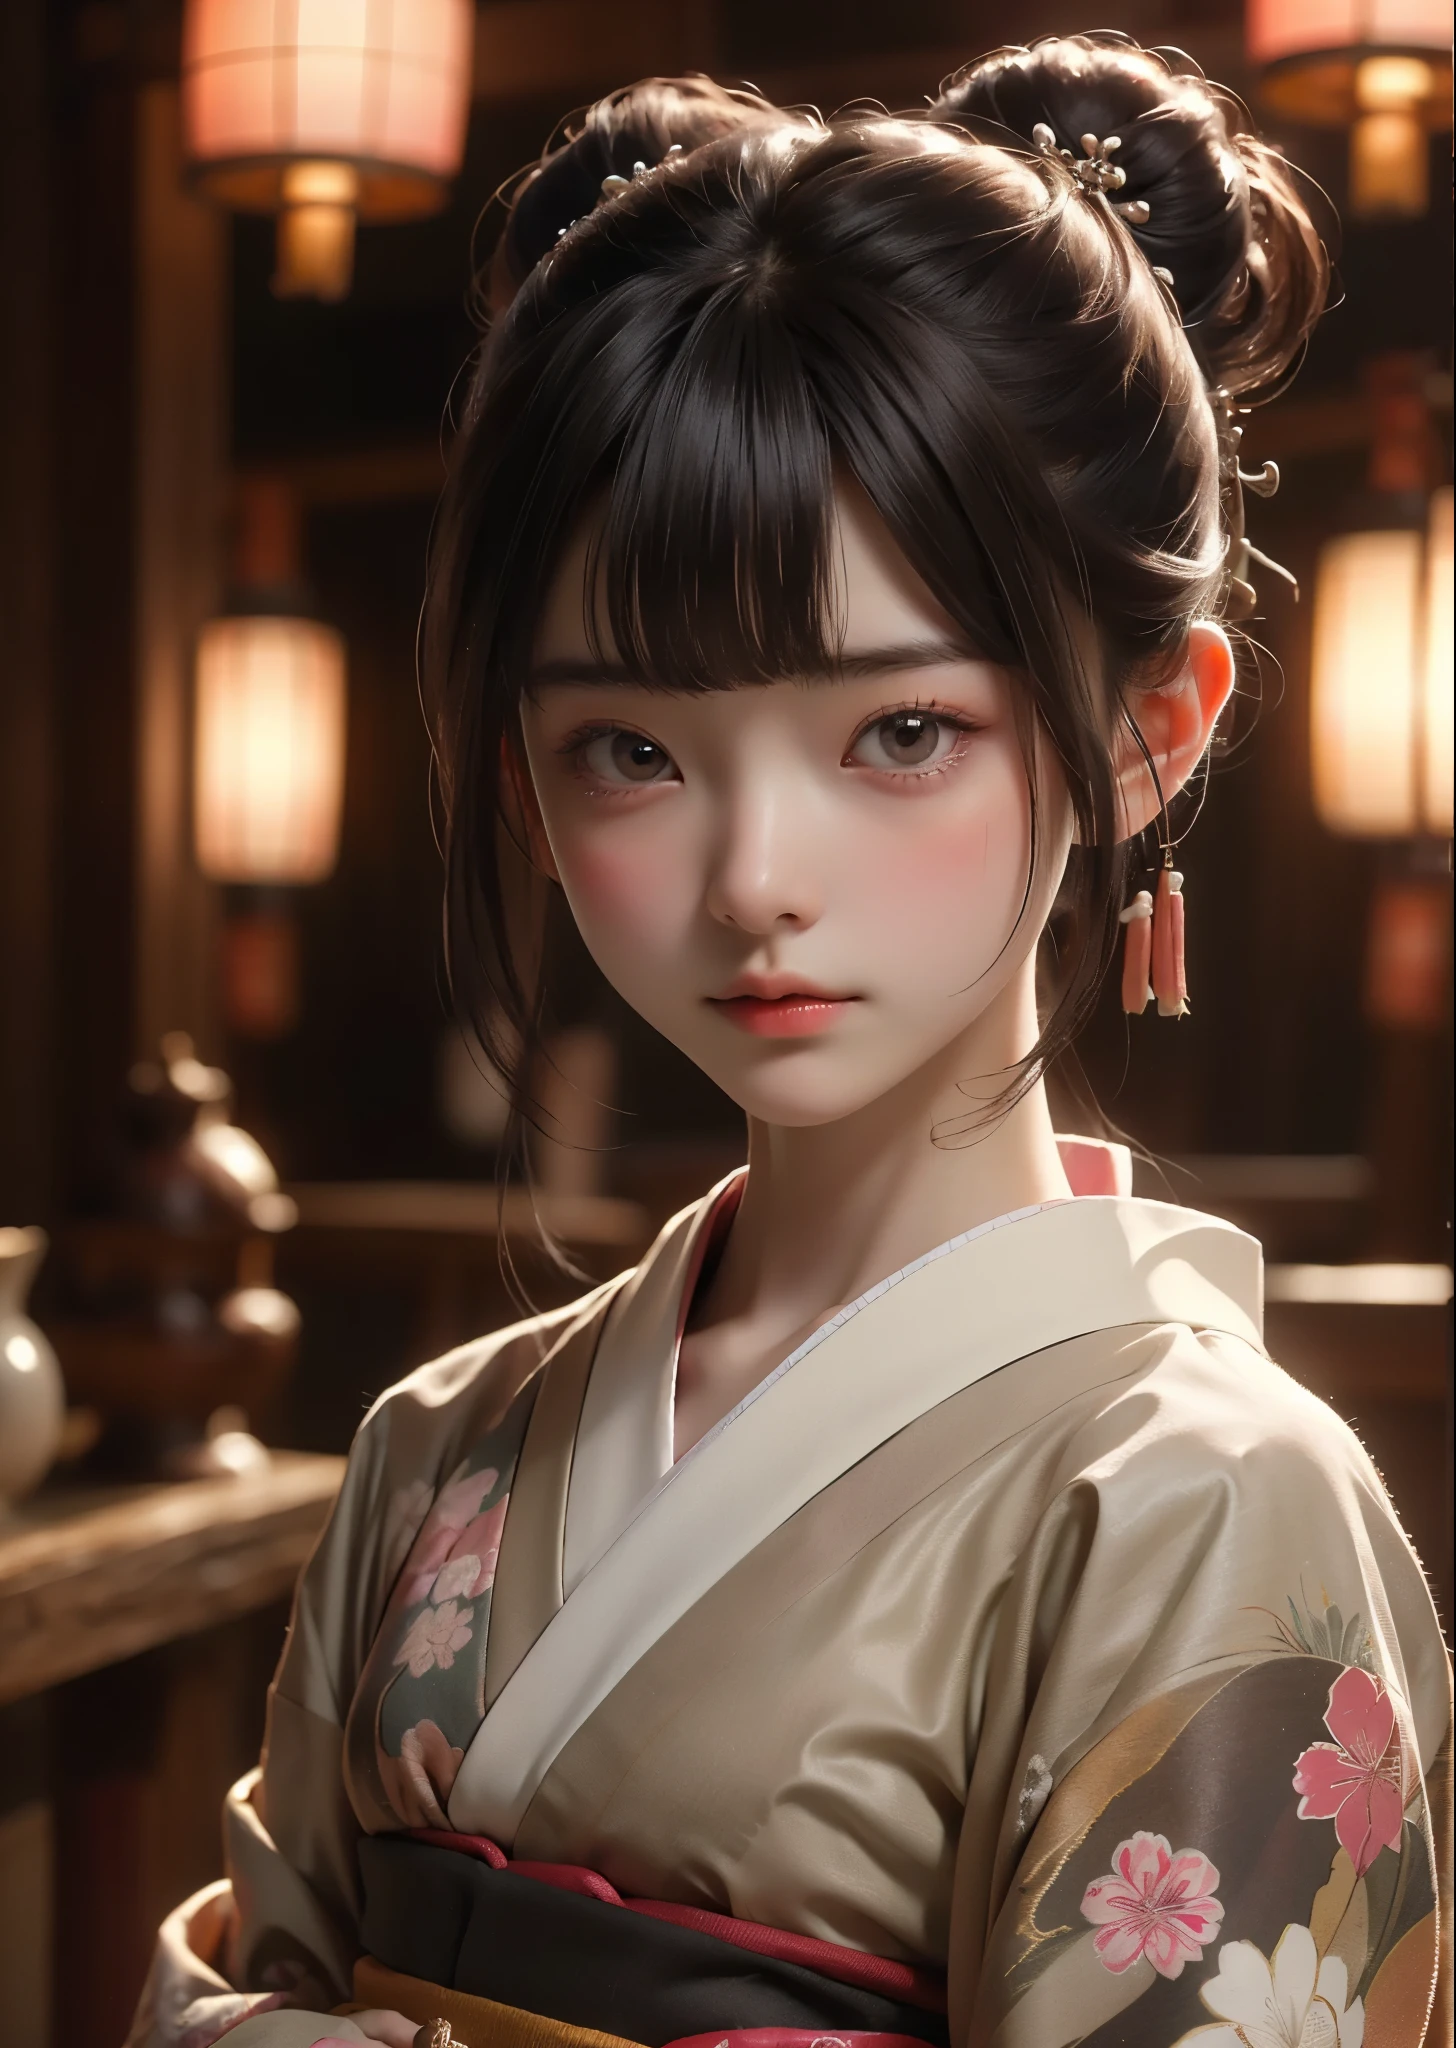 (Meisterwerk, höchste Qualität, höchste Qualität, offizielle Kunst, schön、ästhetisch:1.2)、Portraitfotografie、 (1 japanisches Kimono schönes Mädchen)、Ein wunderschöner Kimono, der von Frauen bei japanischen Coming-of-Age-Zeremonien getragen wird、Der Kragen ist schön geschlossen、Ein perfektes Beispiel, wie man einen Kimono trägt、große braune Augen、schöne Haut、Ein bisschen peinlich、（Hochsteckfrisur mit Pony）、Haarschmuck、Sehr detailiert,(Zimmer im japanischen Stil:1.3)、Filmische Beleuchtung、scharfer Fokus、hohe Auflösung、hohe Auflösung、Hohe Farbwiedergabe、hohe Auflösung、super realistisch、